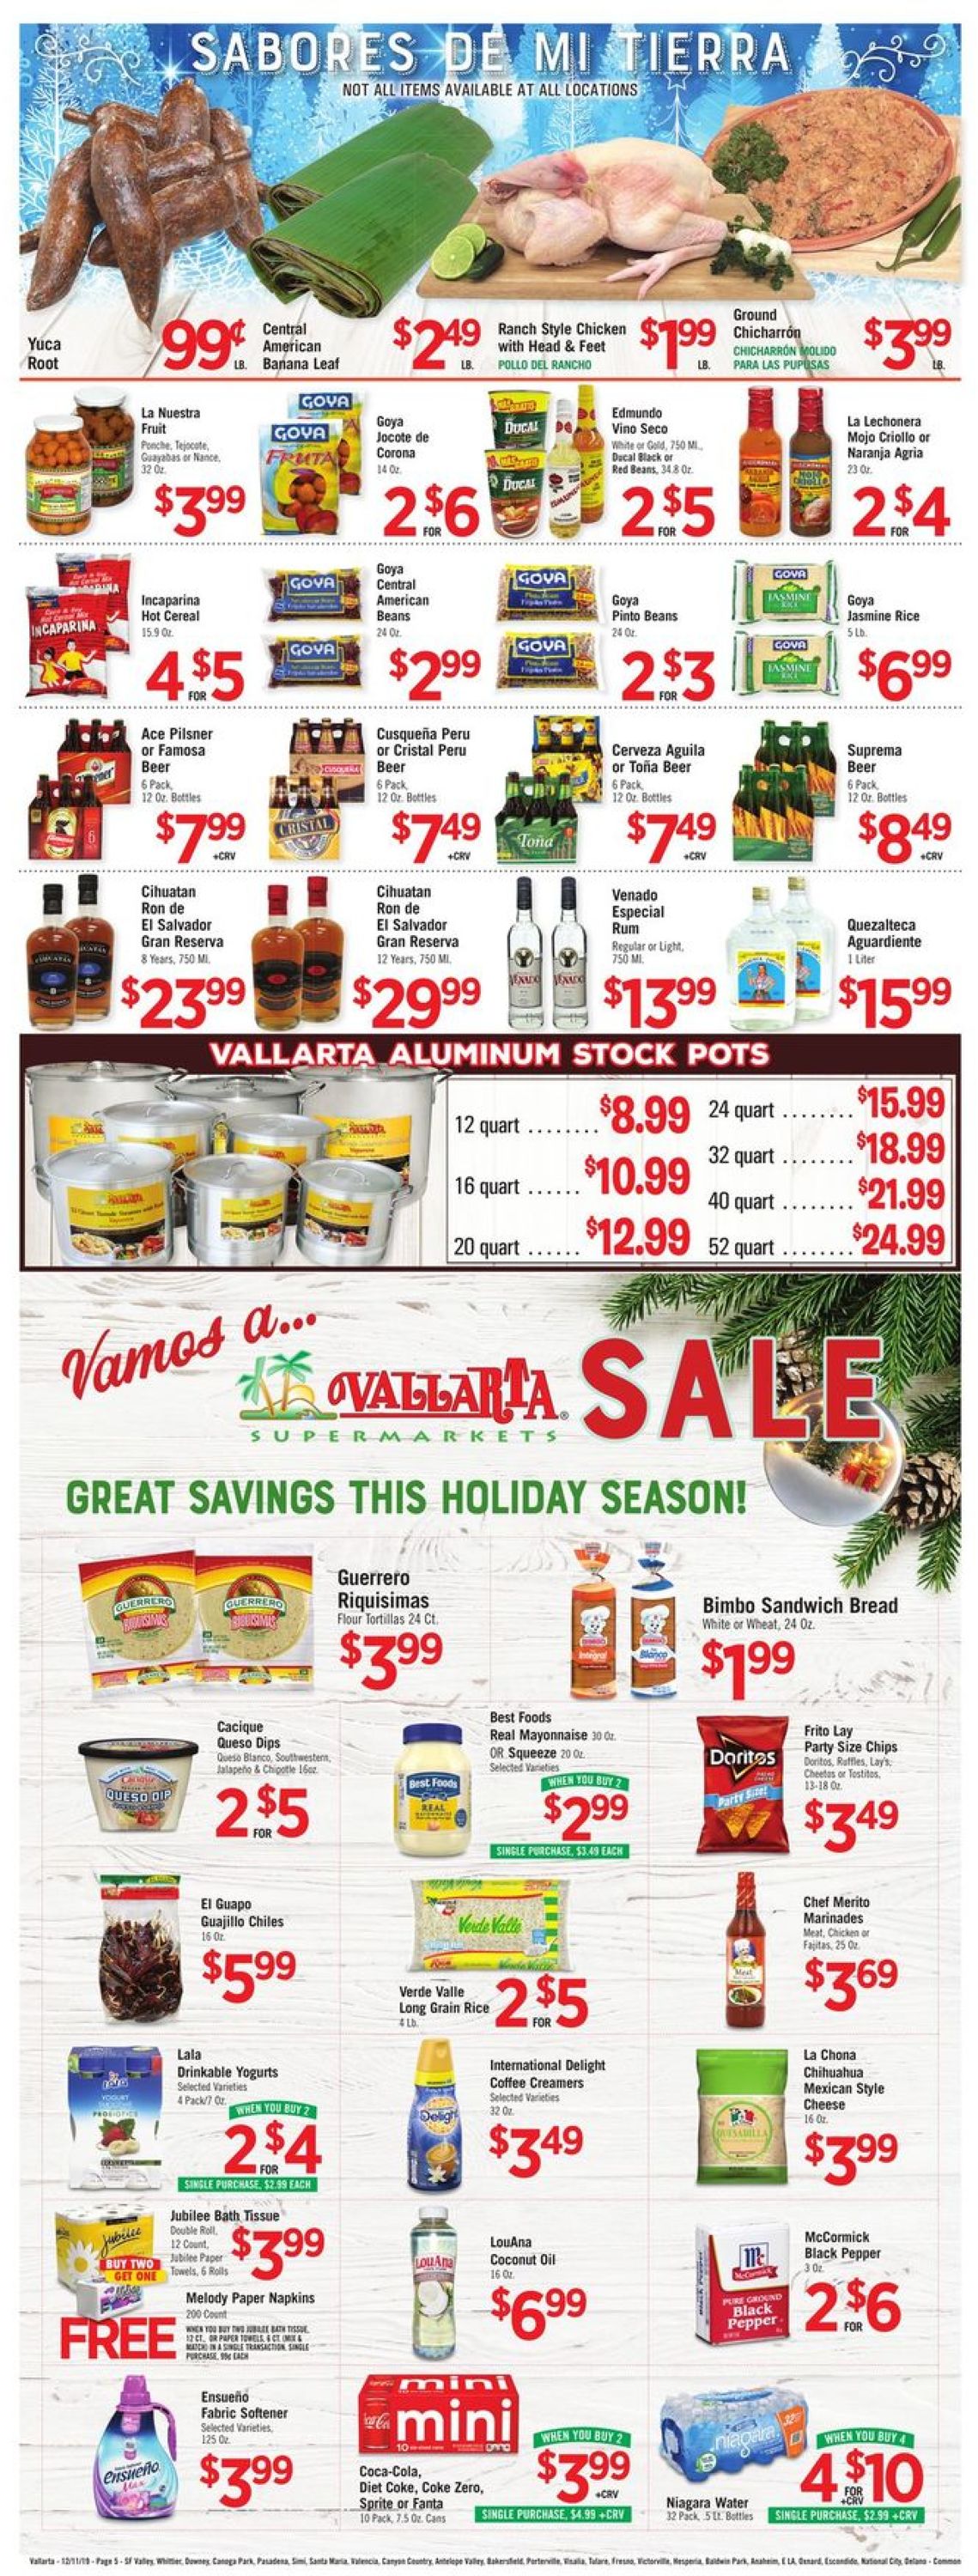 Catalogue Vallarta - Holidays Ad 2019 from 12/11/2019